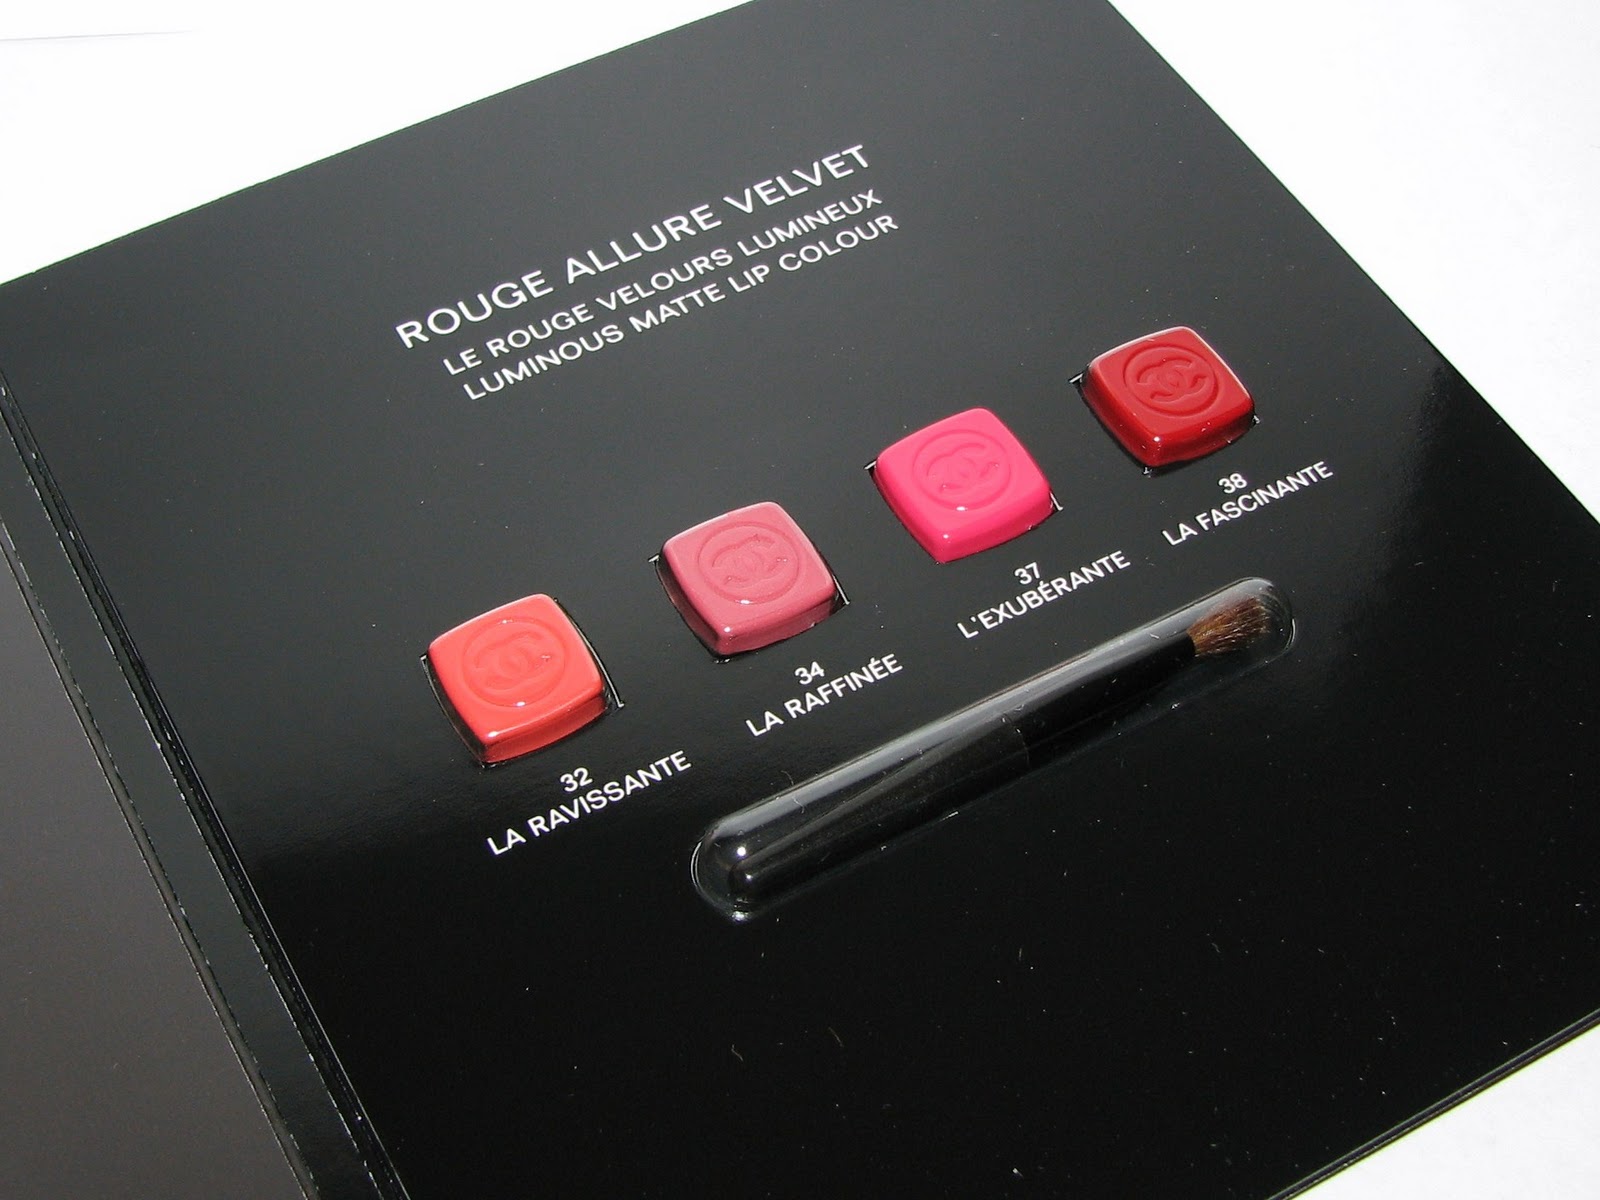 CHANEL Rouge Allure Velvet Luminous Matte Lip Colour - Reviews